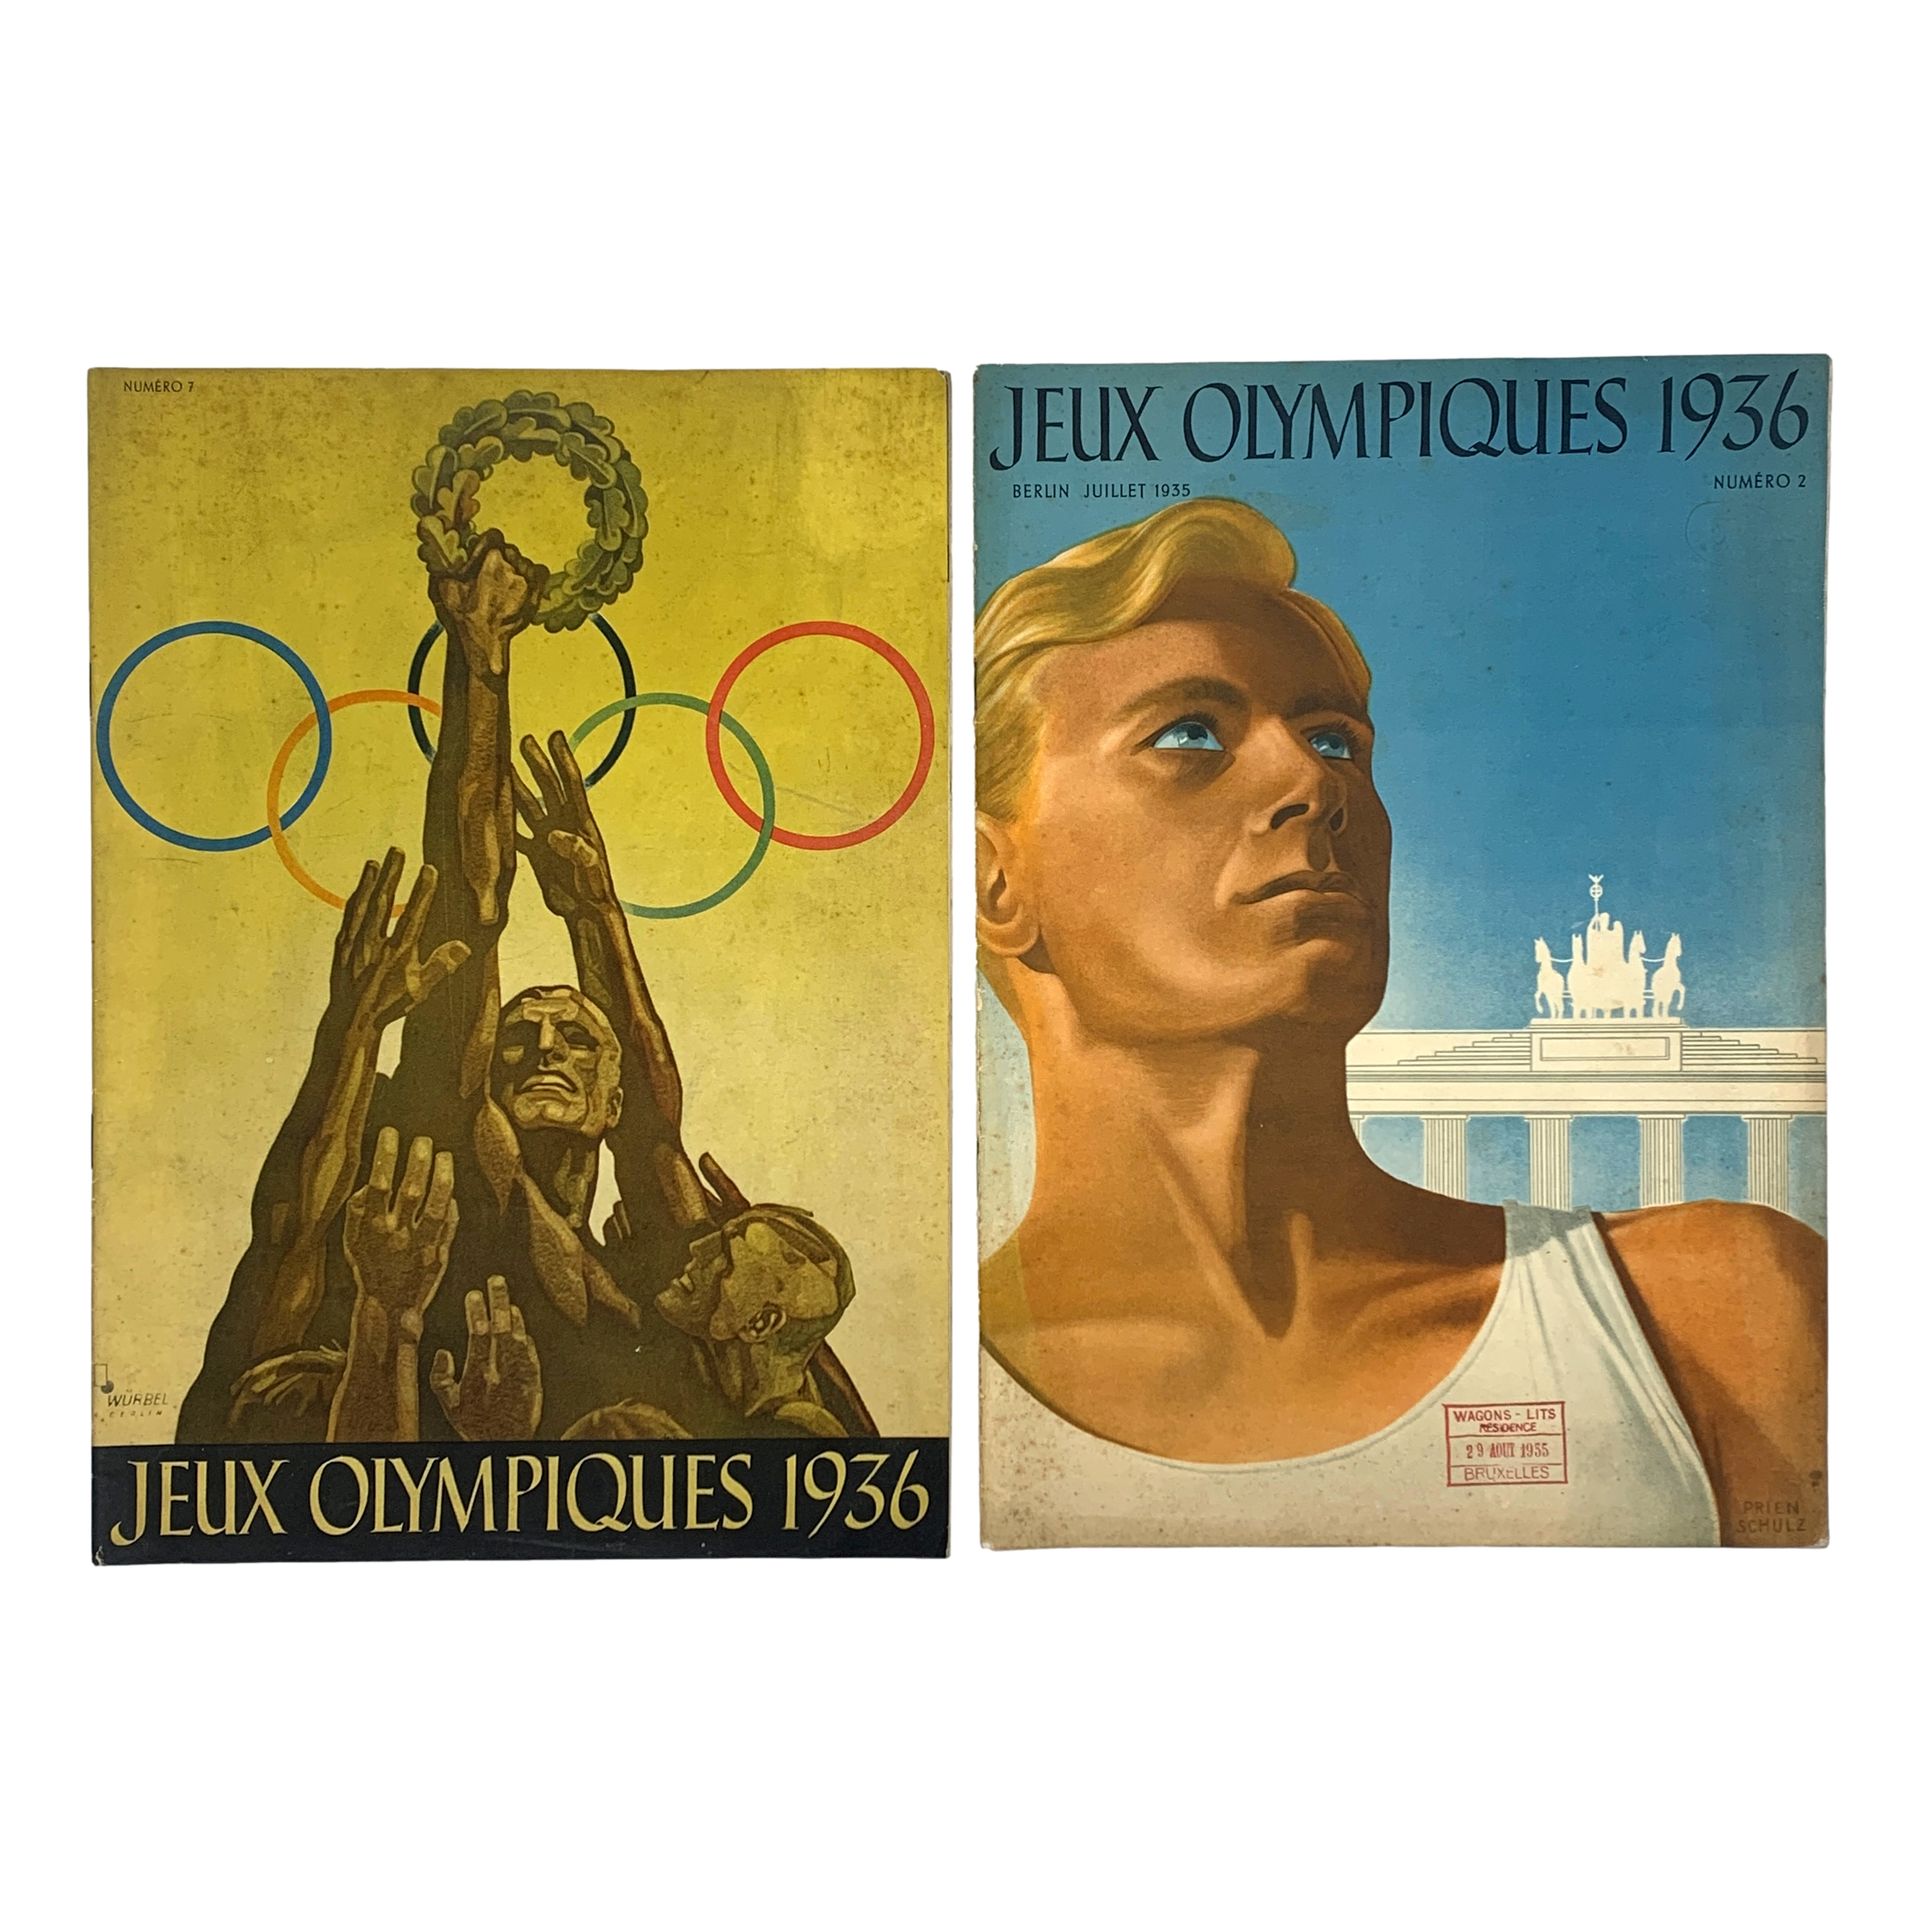 Null “JEUX OLYMPIQUES 1936” - Ensemble des numéros 1 et 2 de la revue publiée pa&hellip;